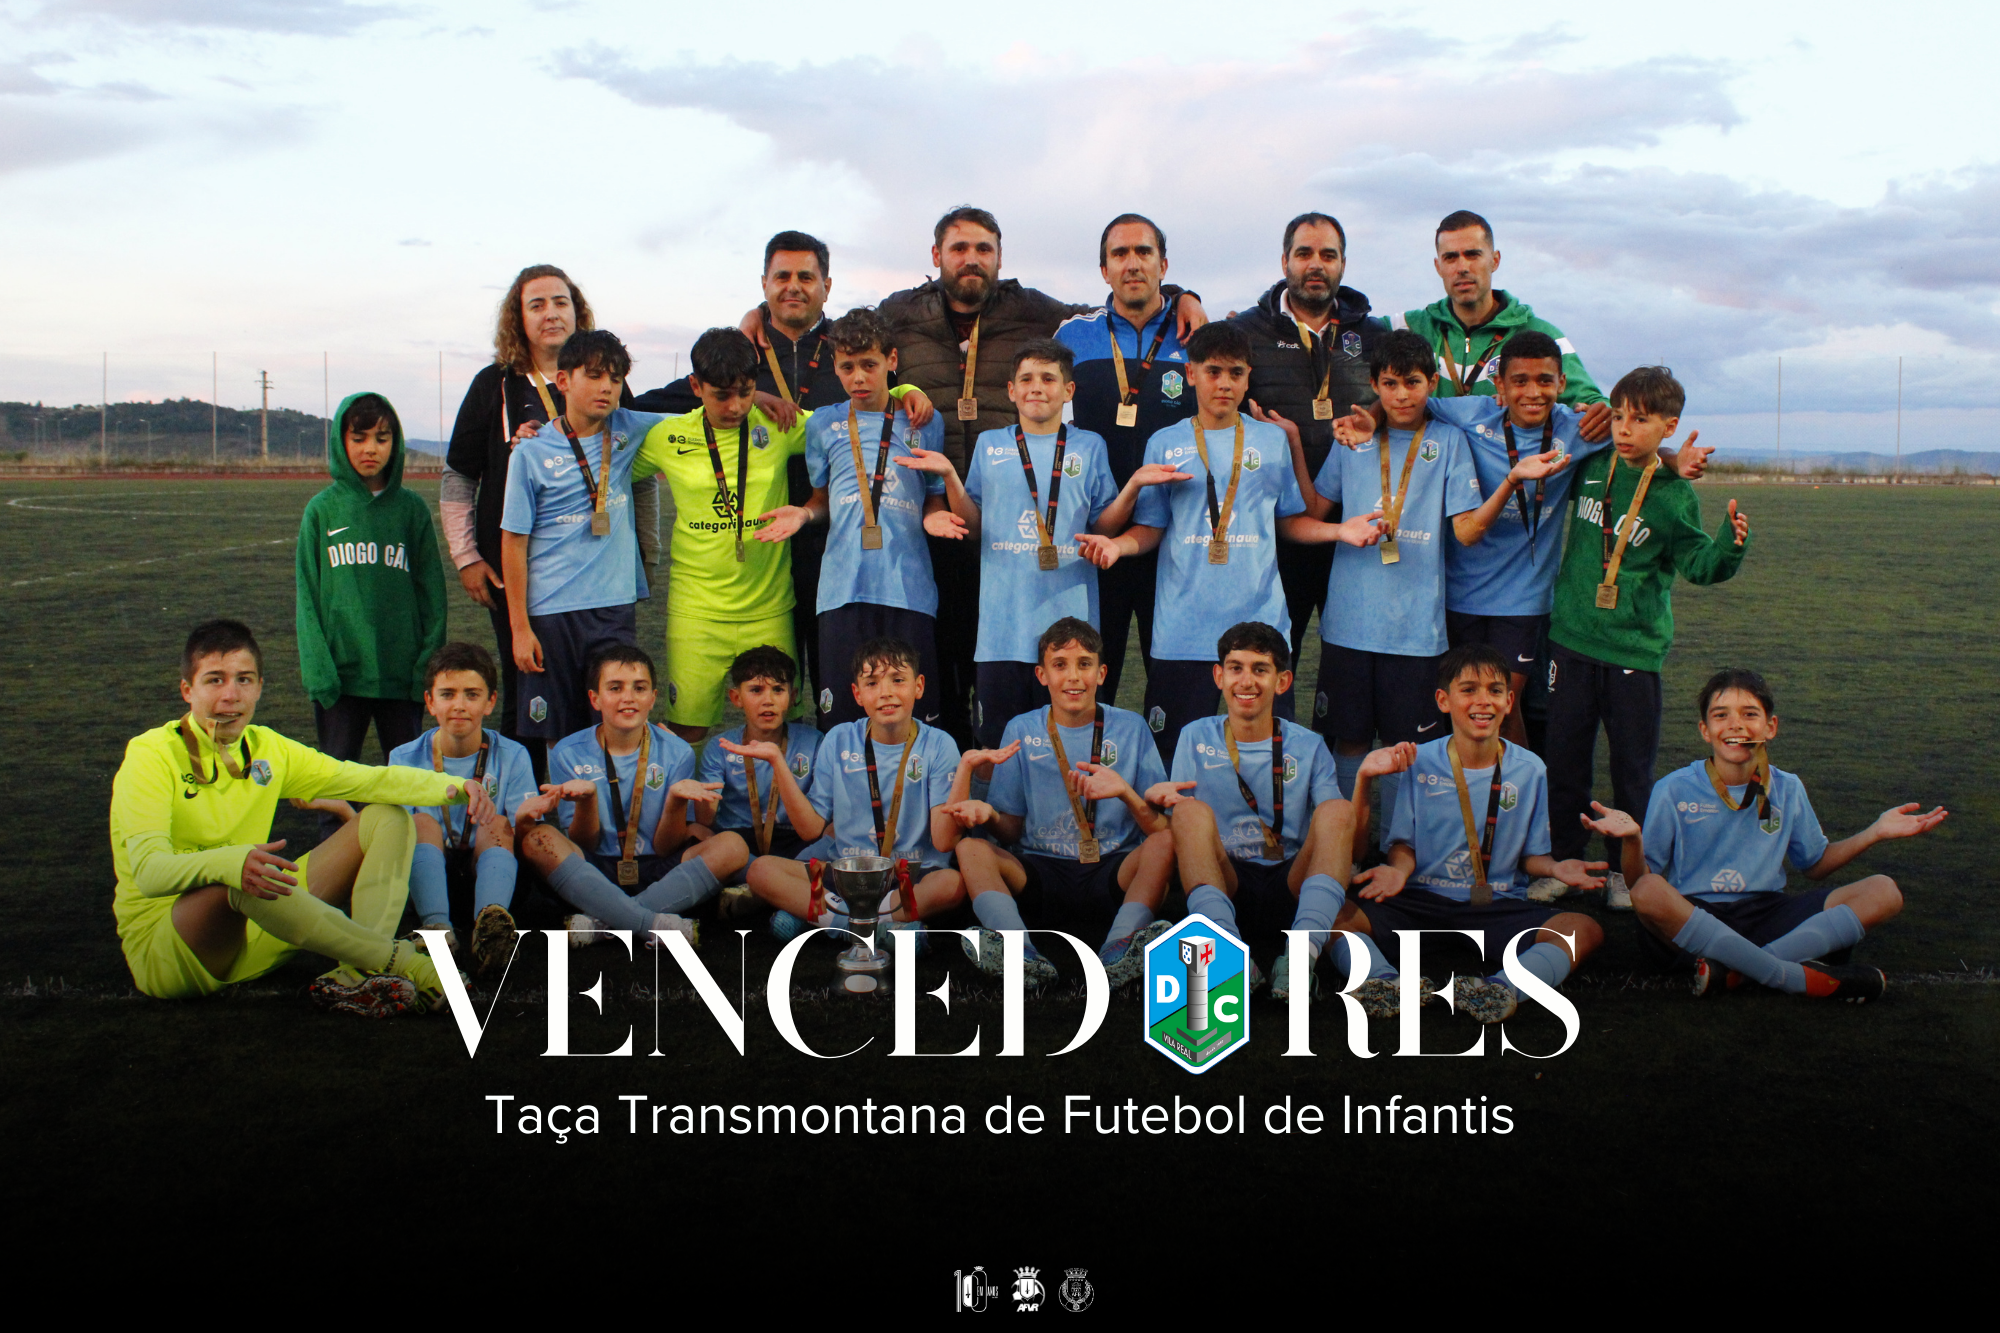 ADCE Diogo Cão Vencedor da Taça Transmontana de Futebol de Infantis